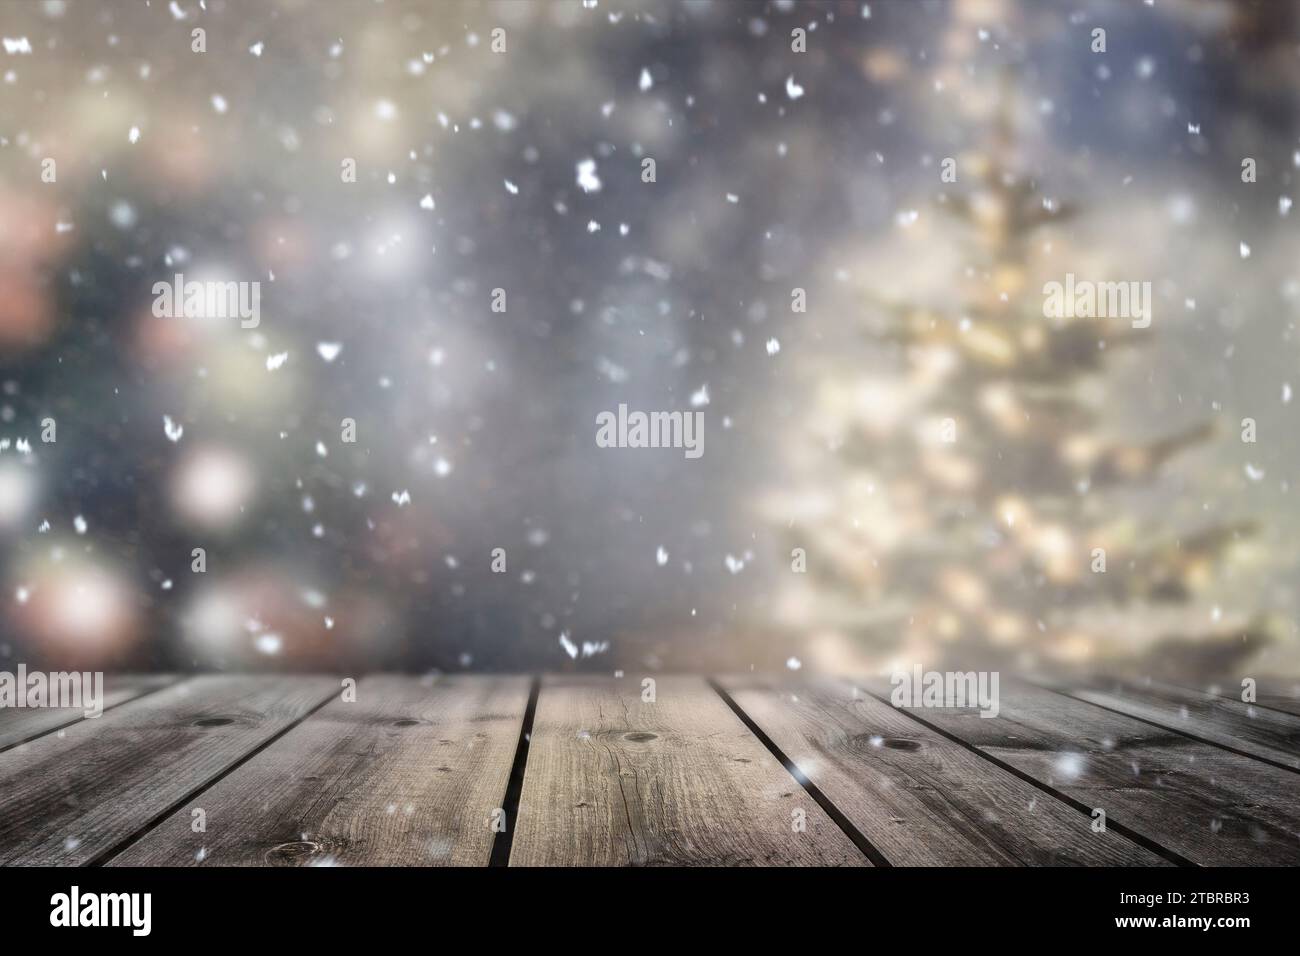 Fond flou avec des sapins couverts de neige et un arbre de Noël Banque D'Images